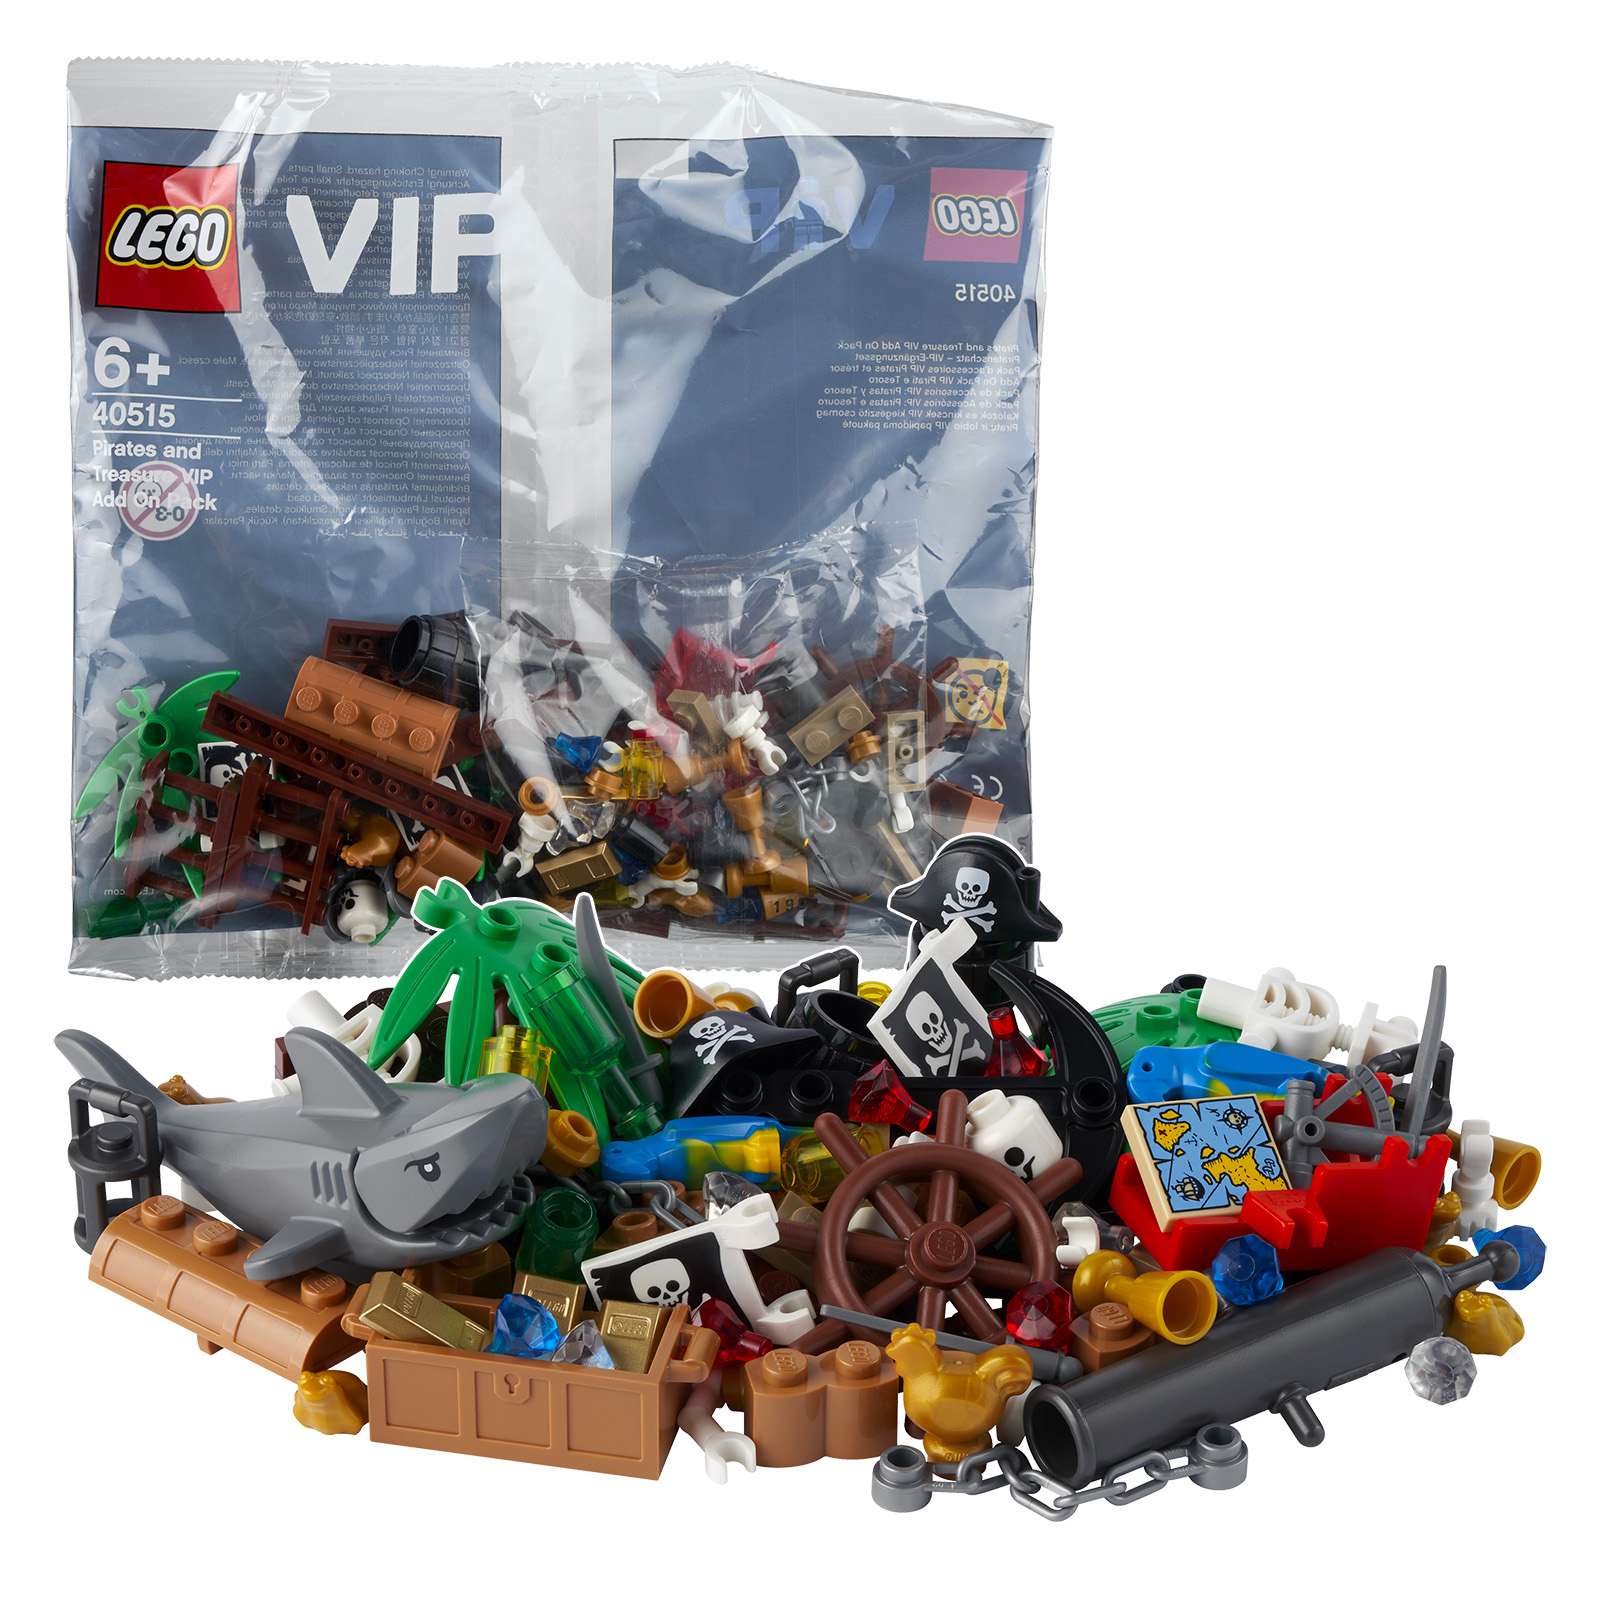 Sul LEGO Shop: il polisacco 40515 Pirates and Treasure VIP Add On Pack è gratuito a partire da 50 € di acquisto